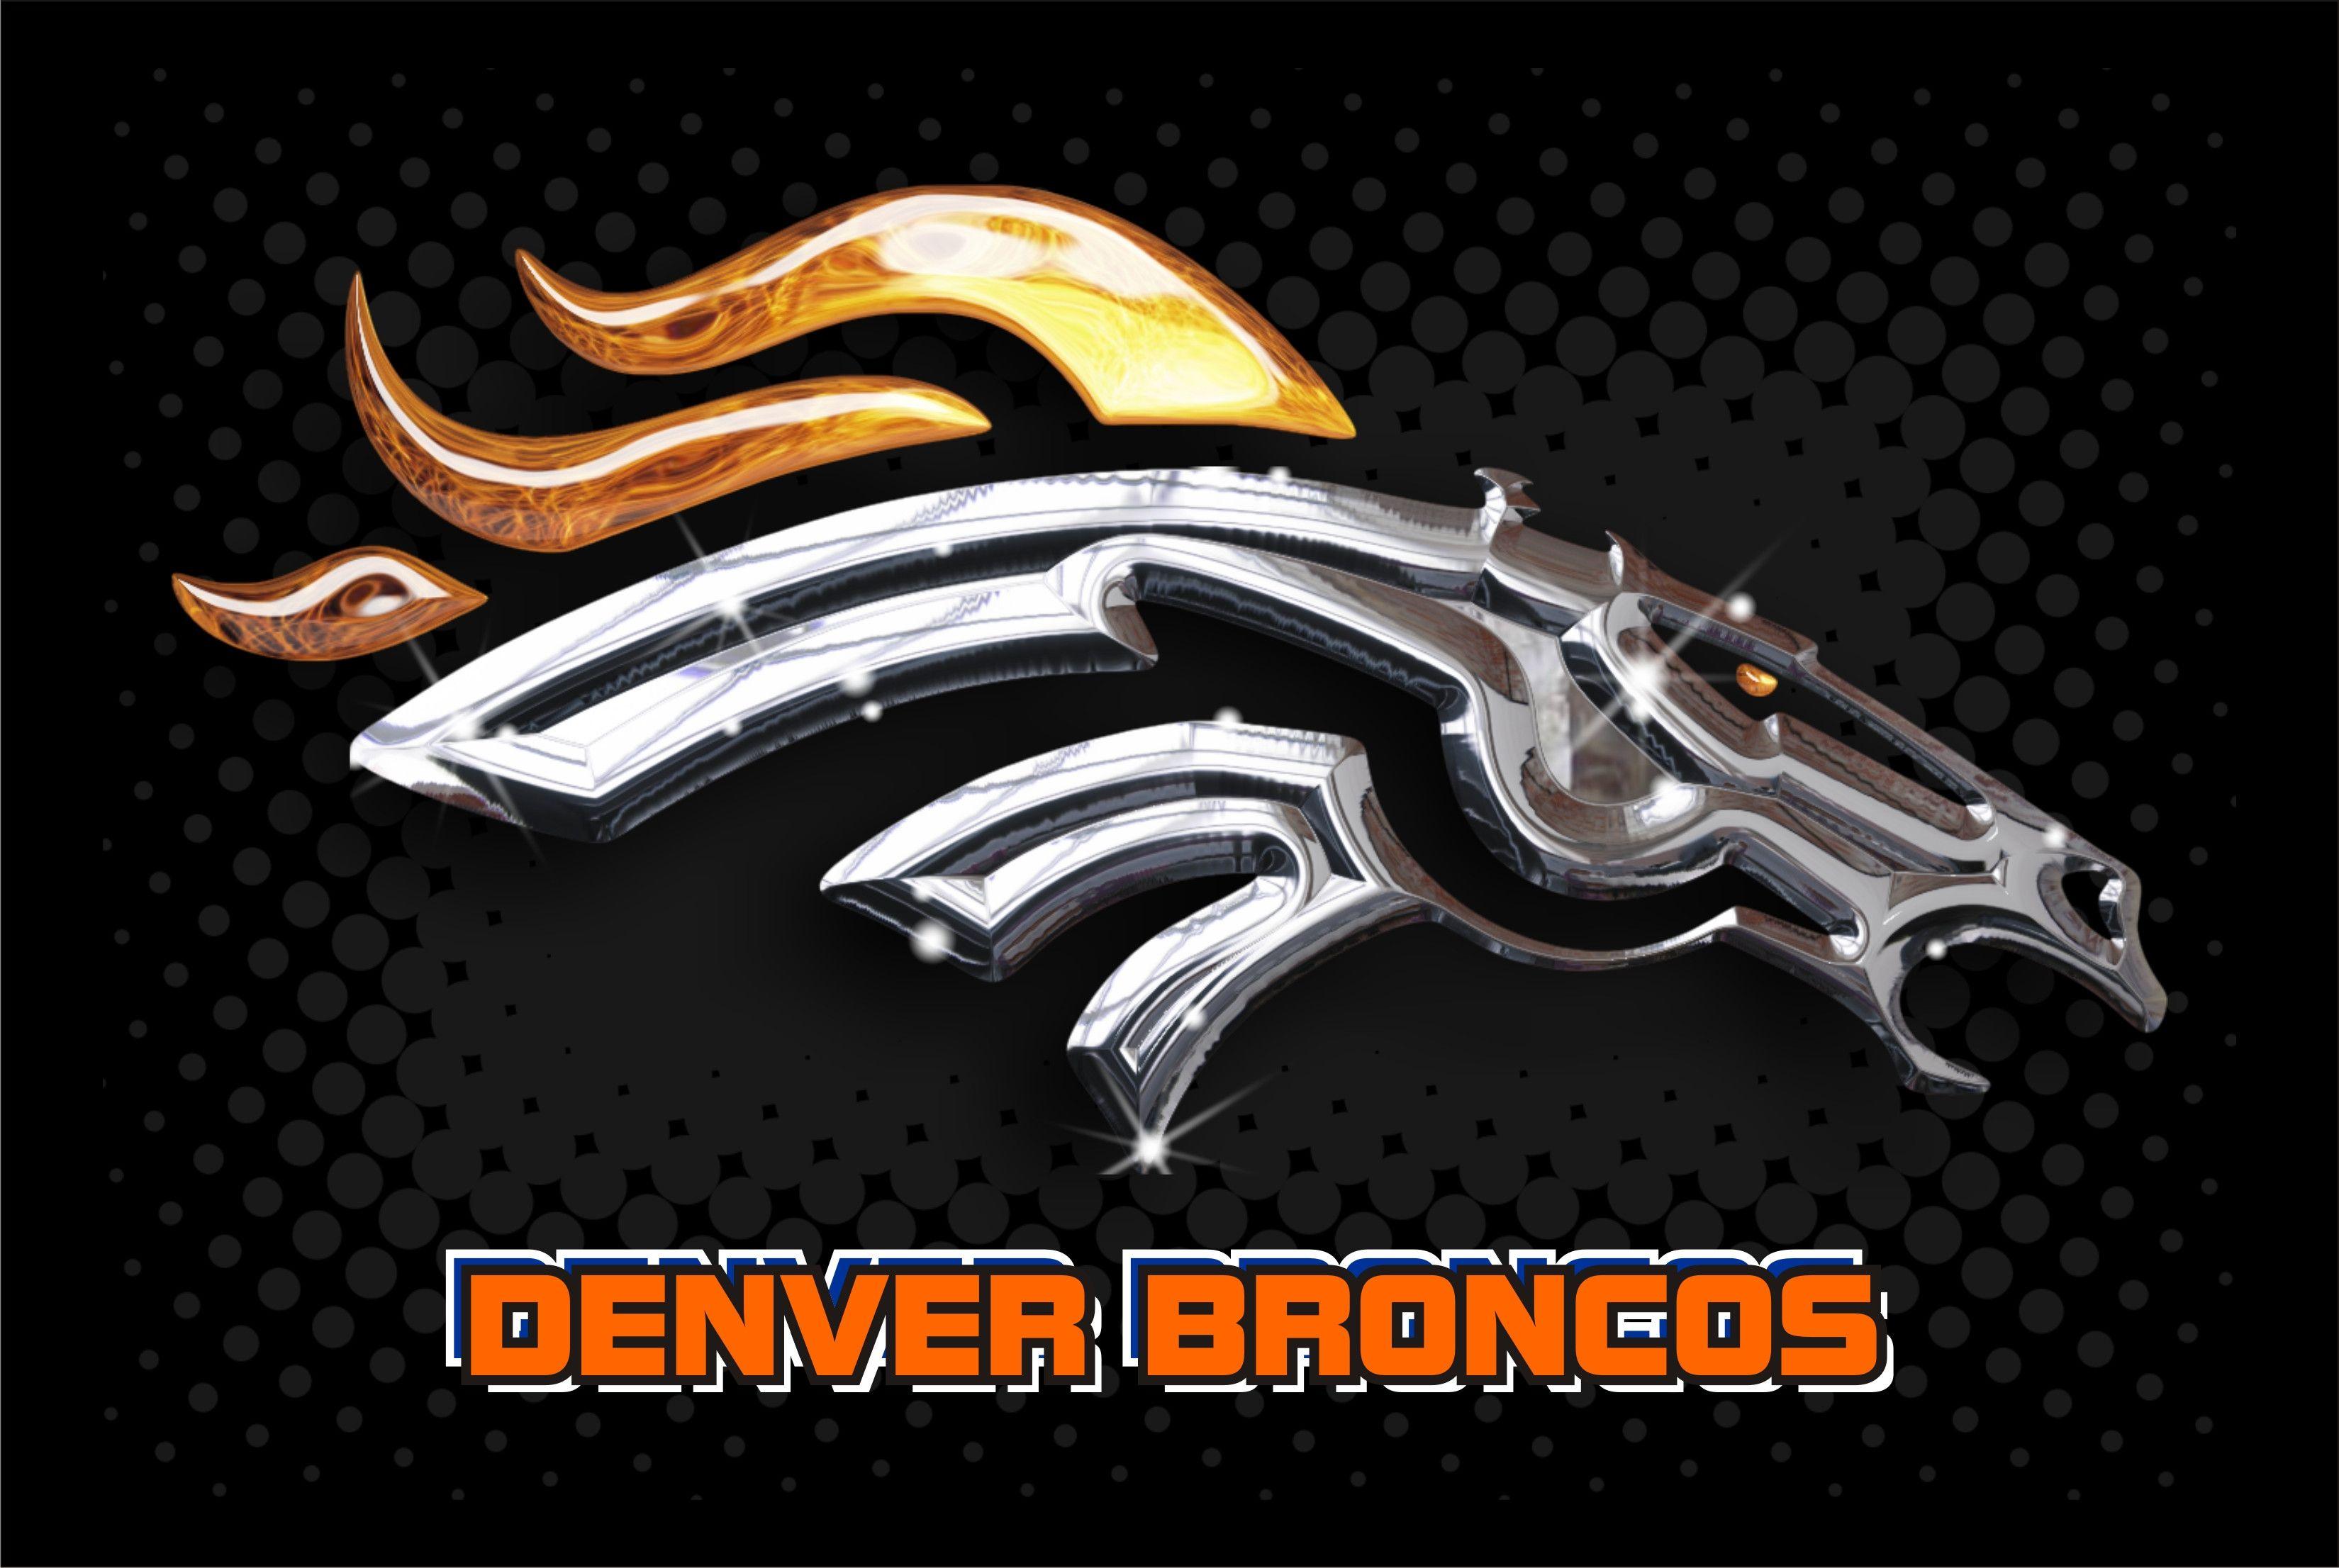 Denver Broncos 2014 NFL Logo Wallpaper Wide or HD